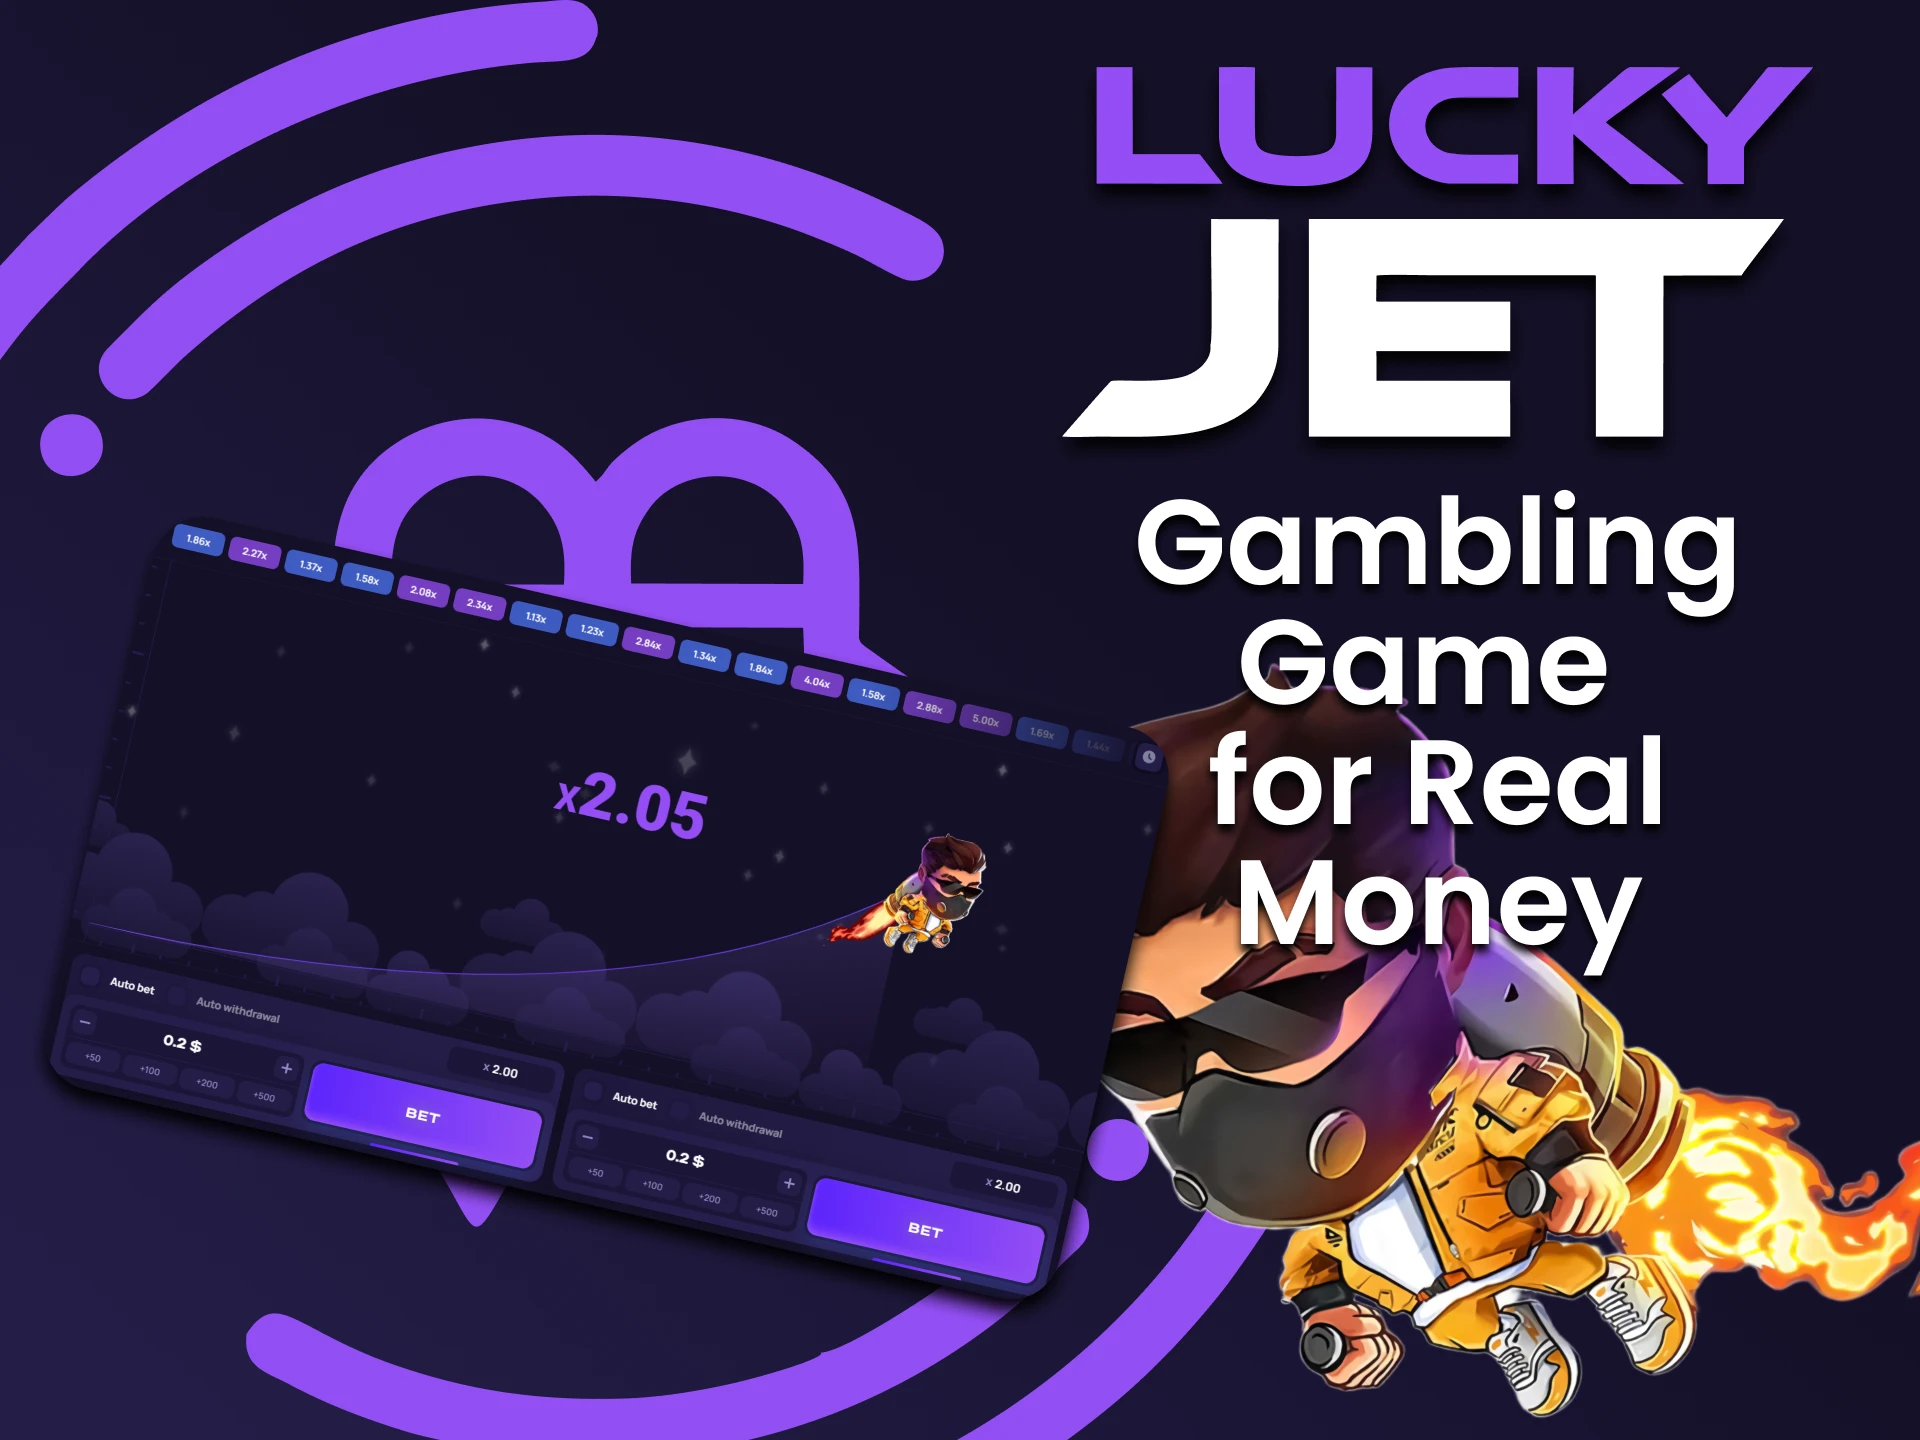 Jugando a Lucky Jet por dinero real es muy probable que gane una cantidad significativa.